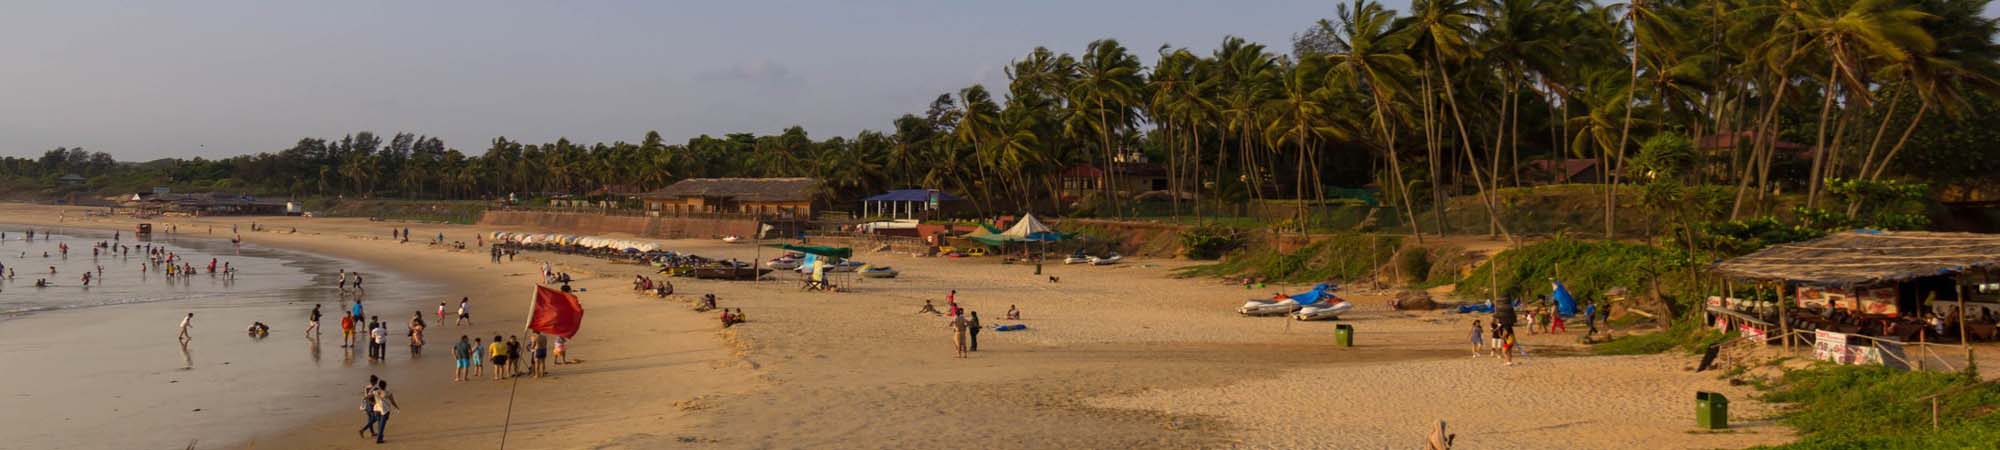 Beach Fun at Sinquerim Goa